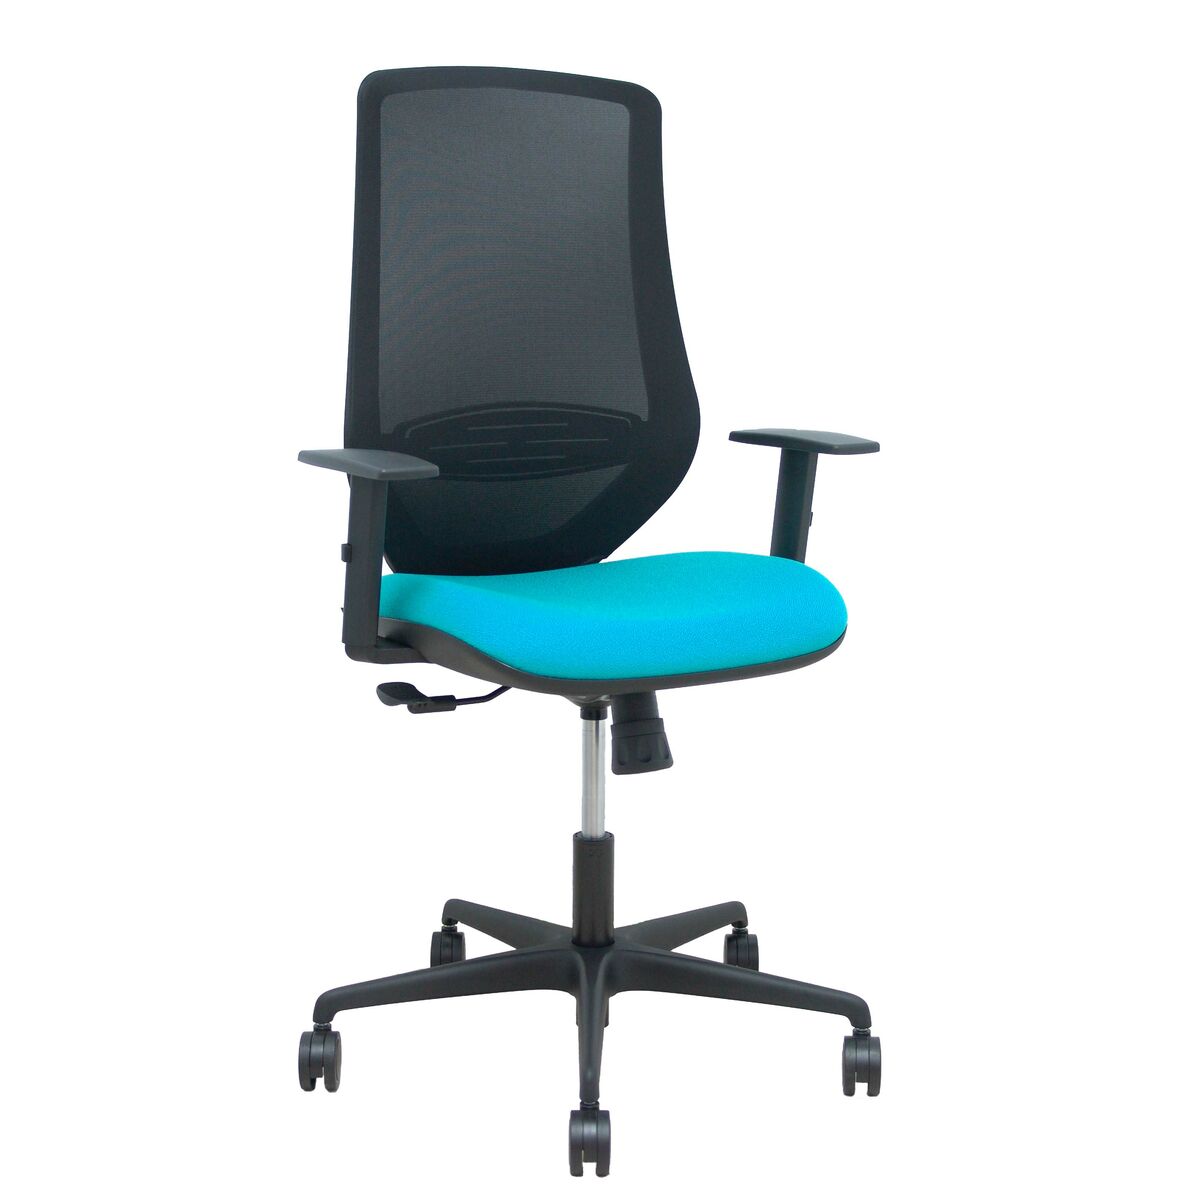 Chaise de Bureau Mardos P&C 0B68R65 Vert turquoise